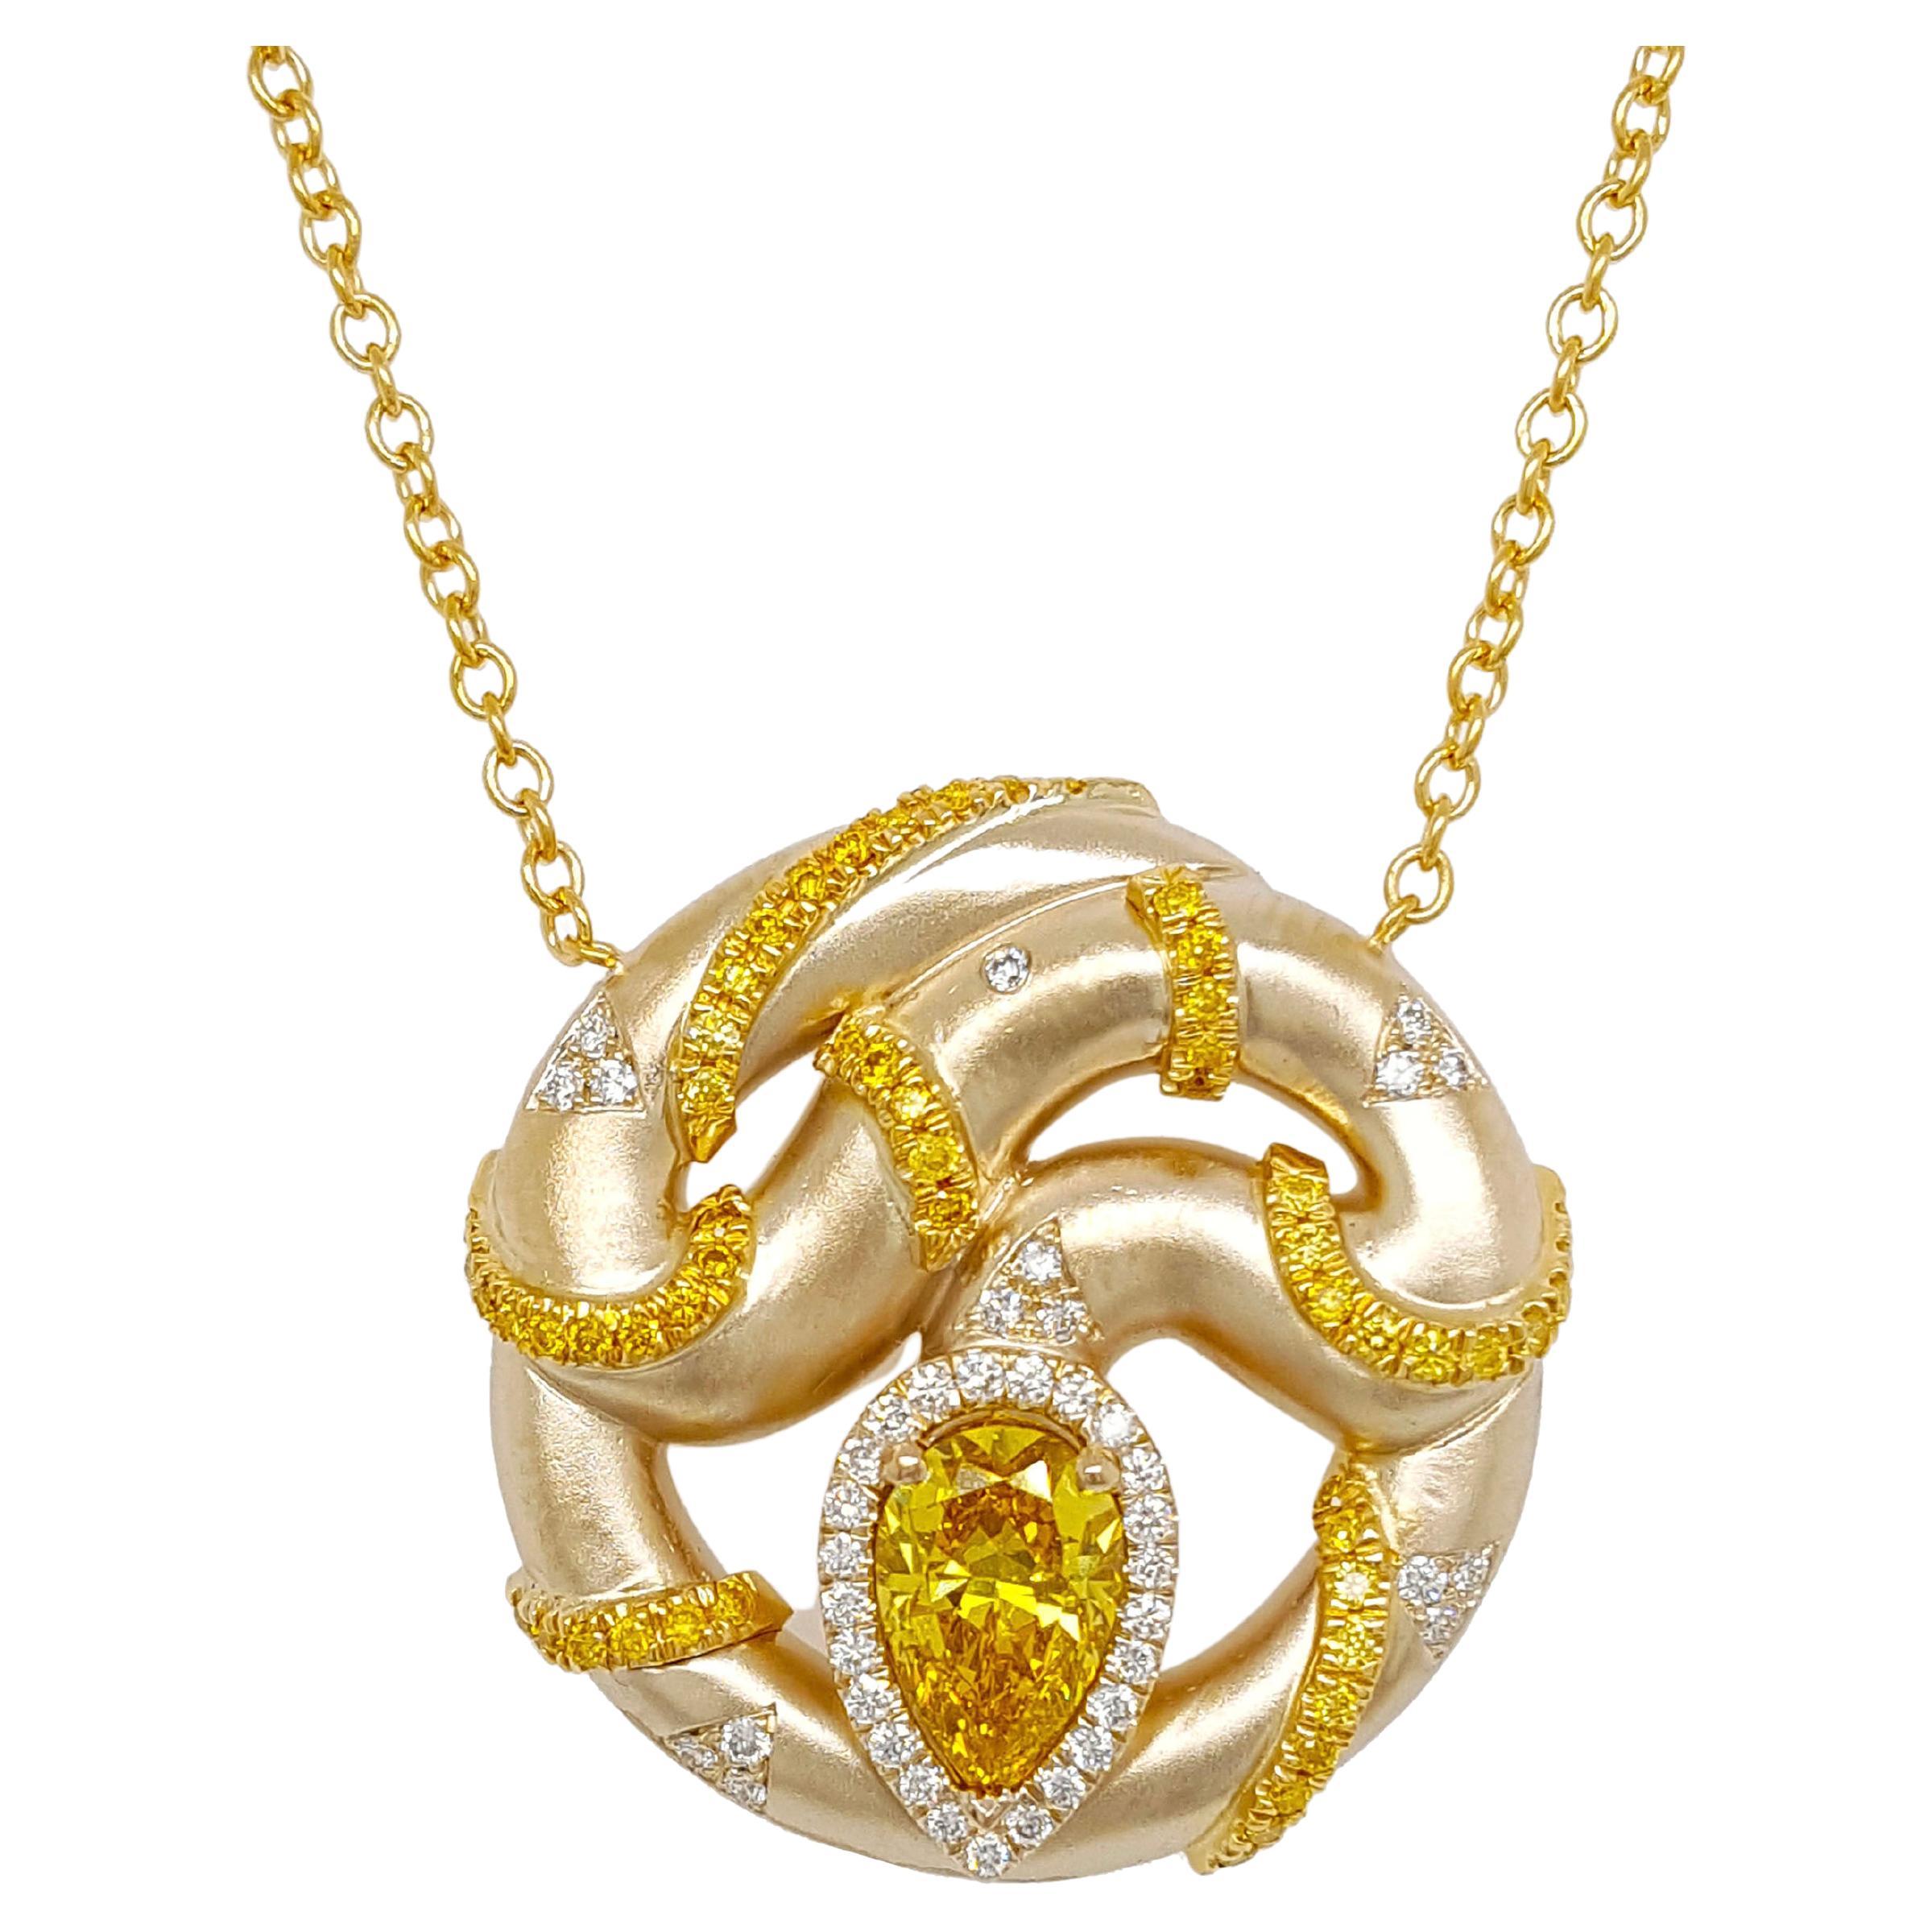 Collier pendentif en or 18 carats avec diamant jaune vif fantaisie de 1 carat, certifié GIA